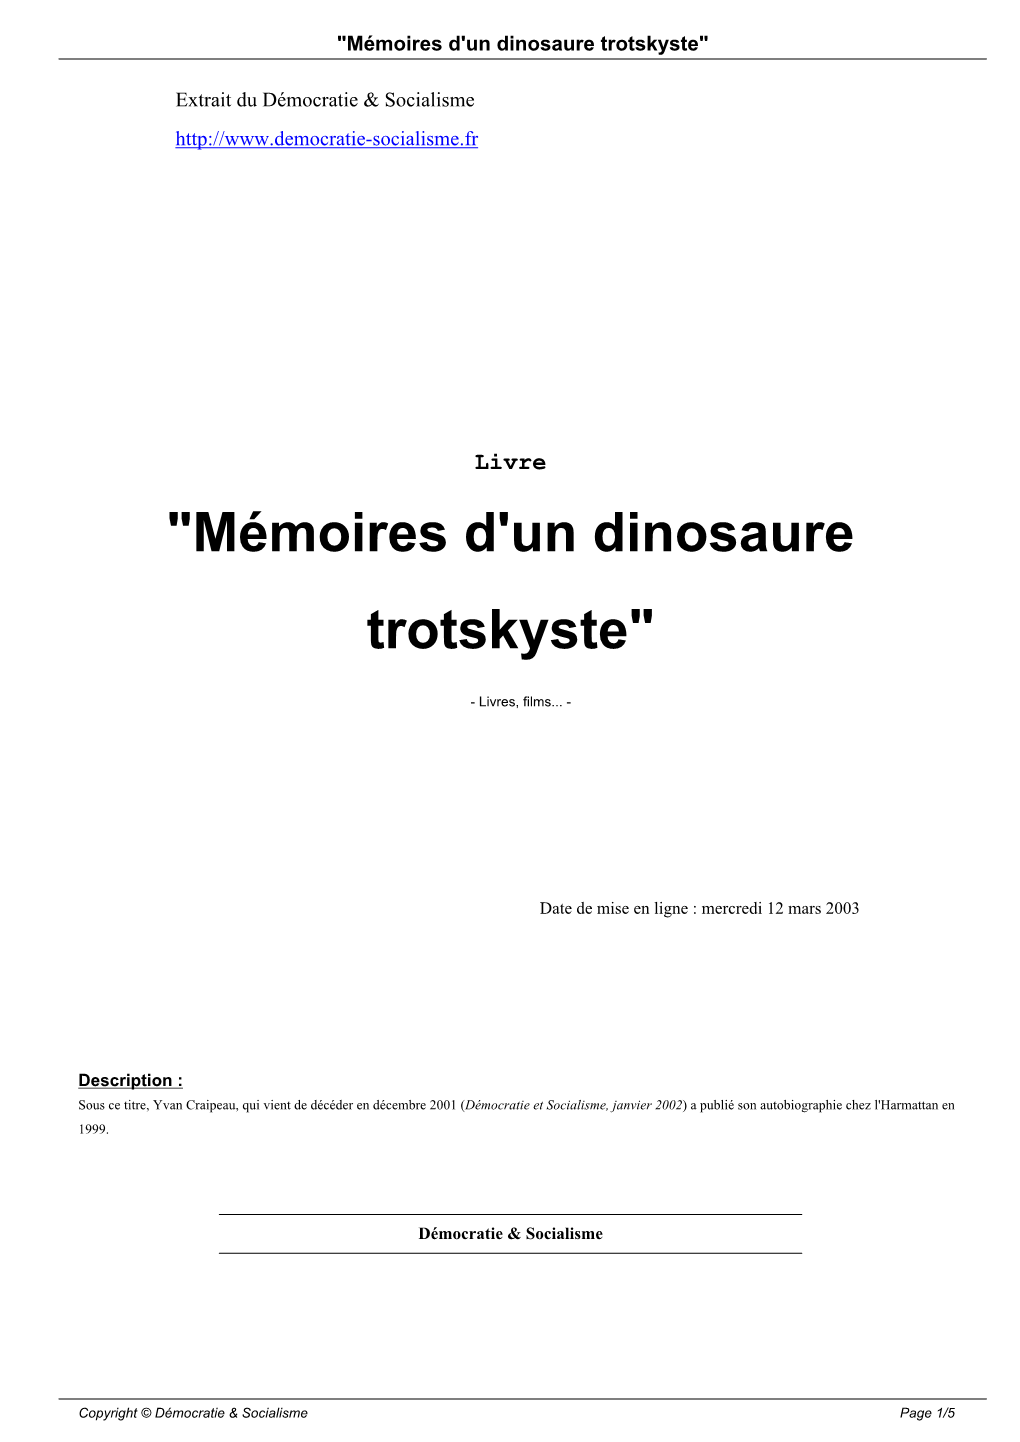 "Mémoires D'un Dinosaure Trotskyste"